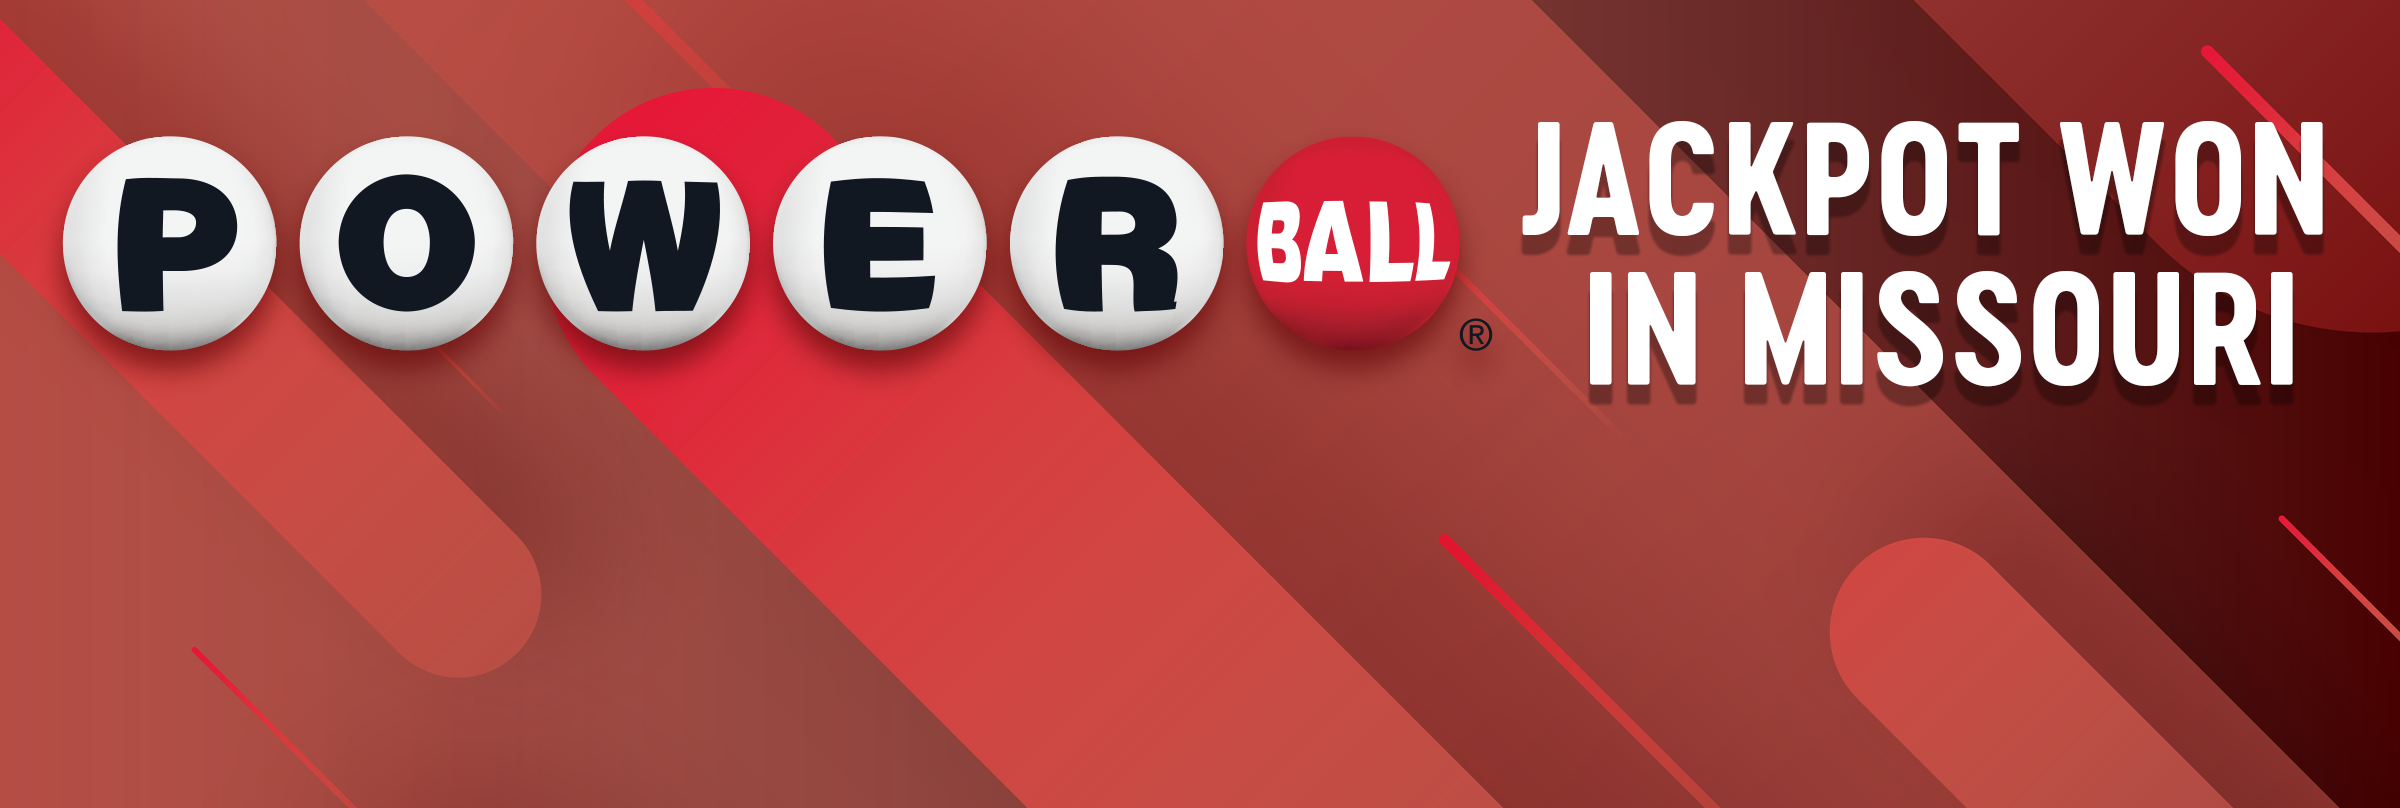 Powerball Jackpot Hit in Missouri